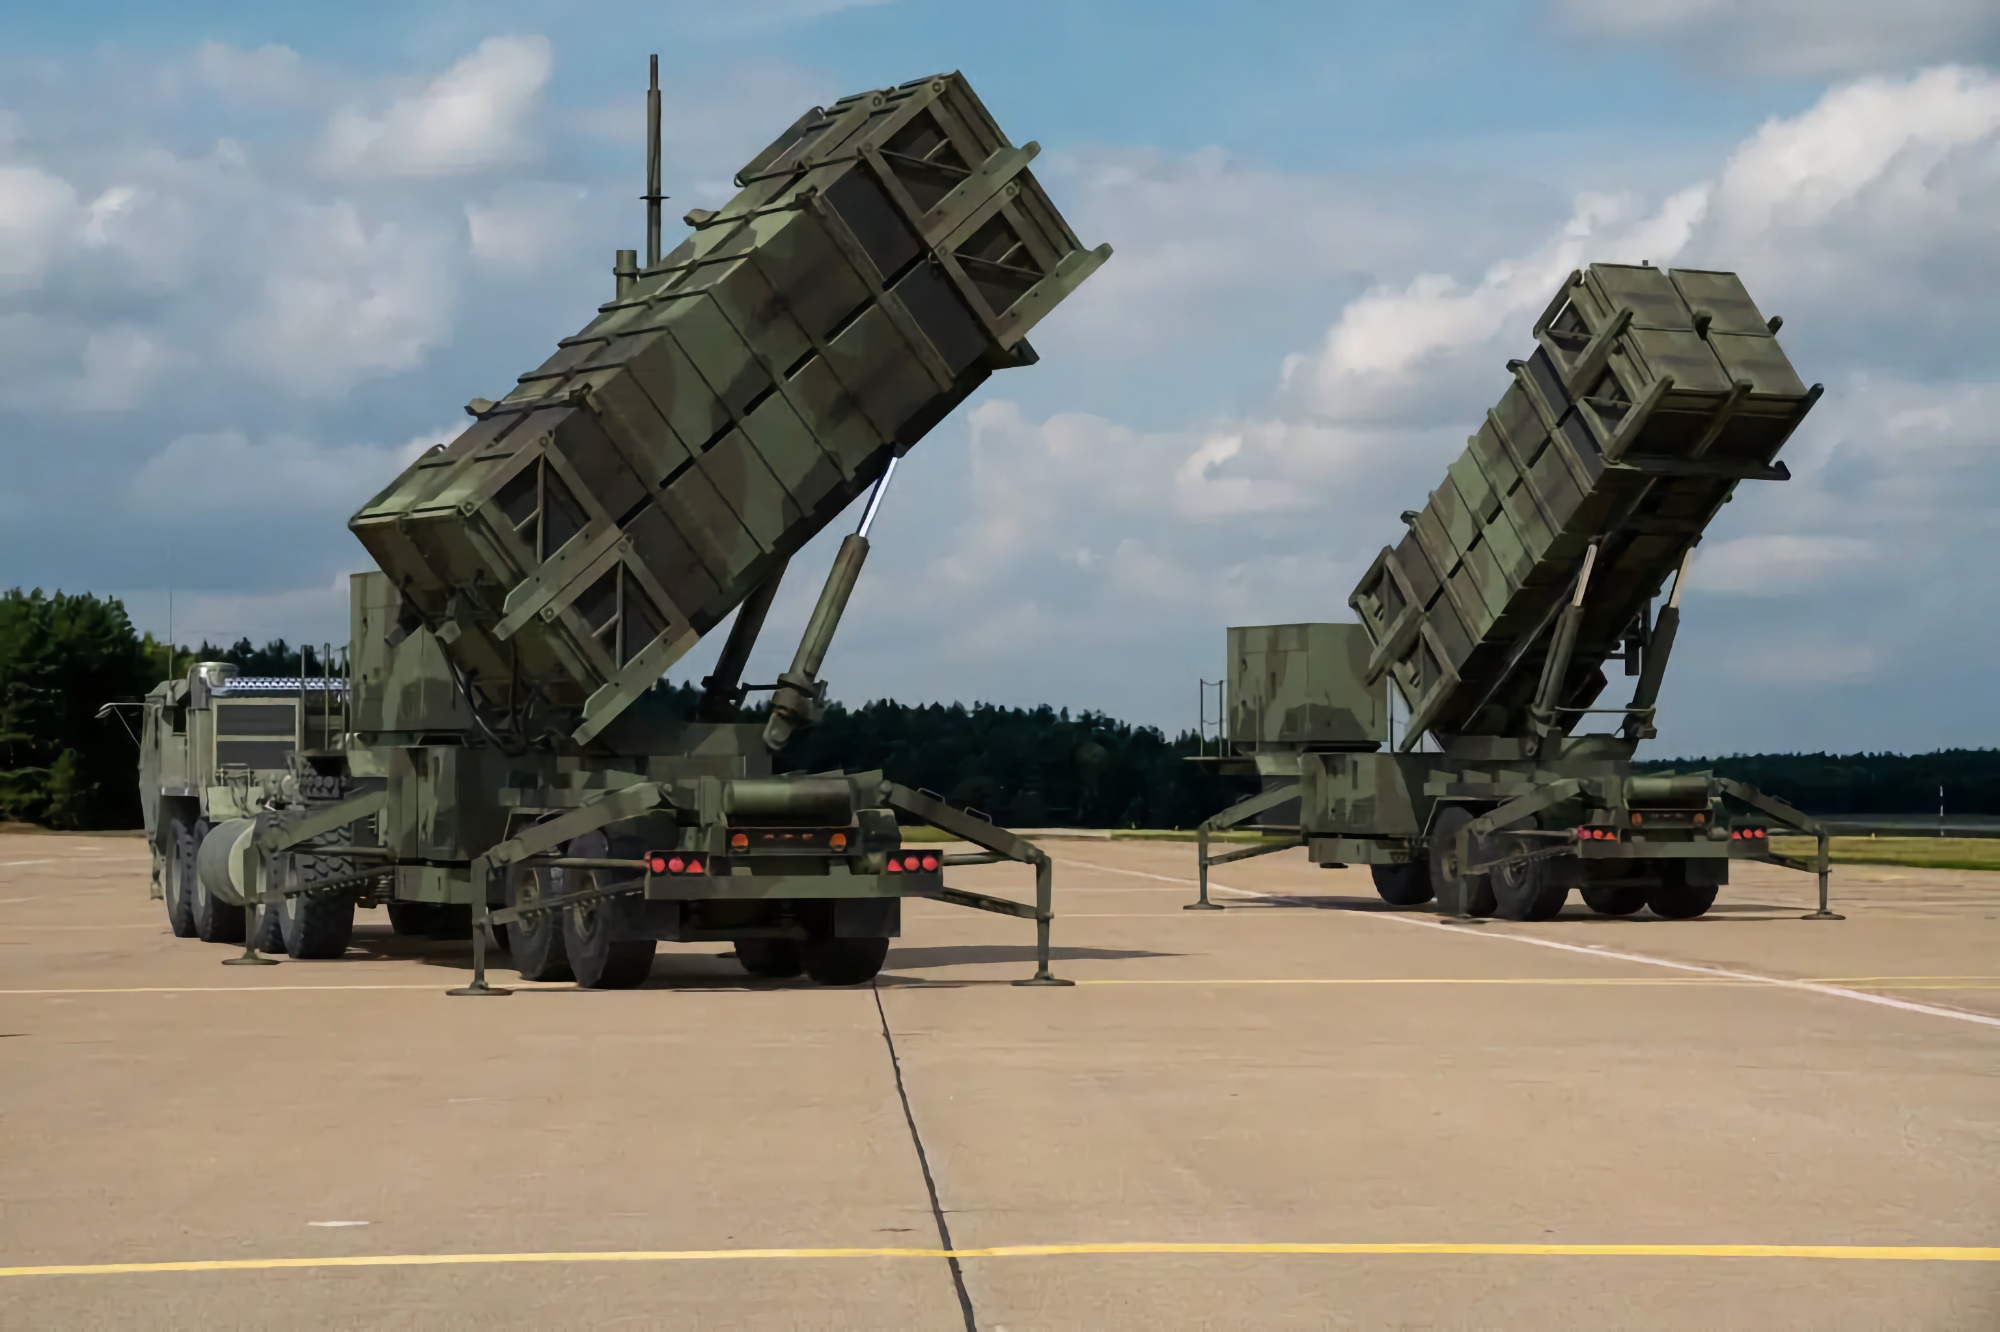 Urzędnik: USA i Holandia przekażą Ukrainie dodatkowe systemy rakietowe Patriot, które mogą zestrzeliwać cele balistyczne